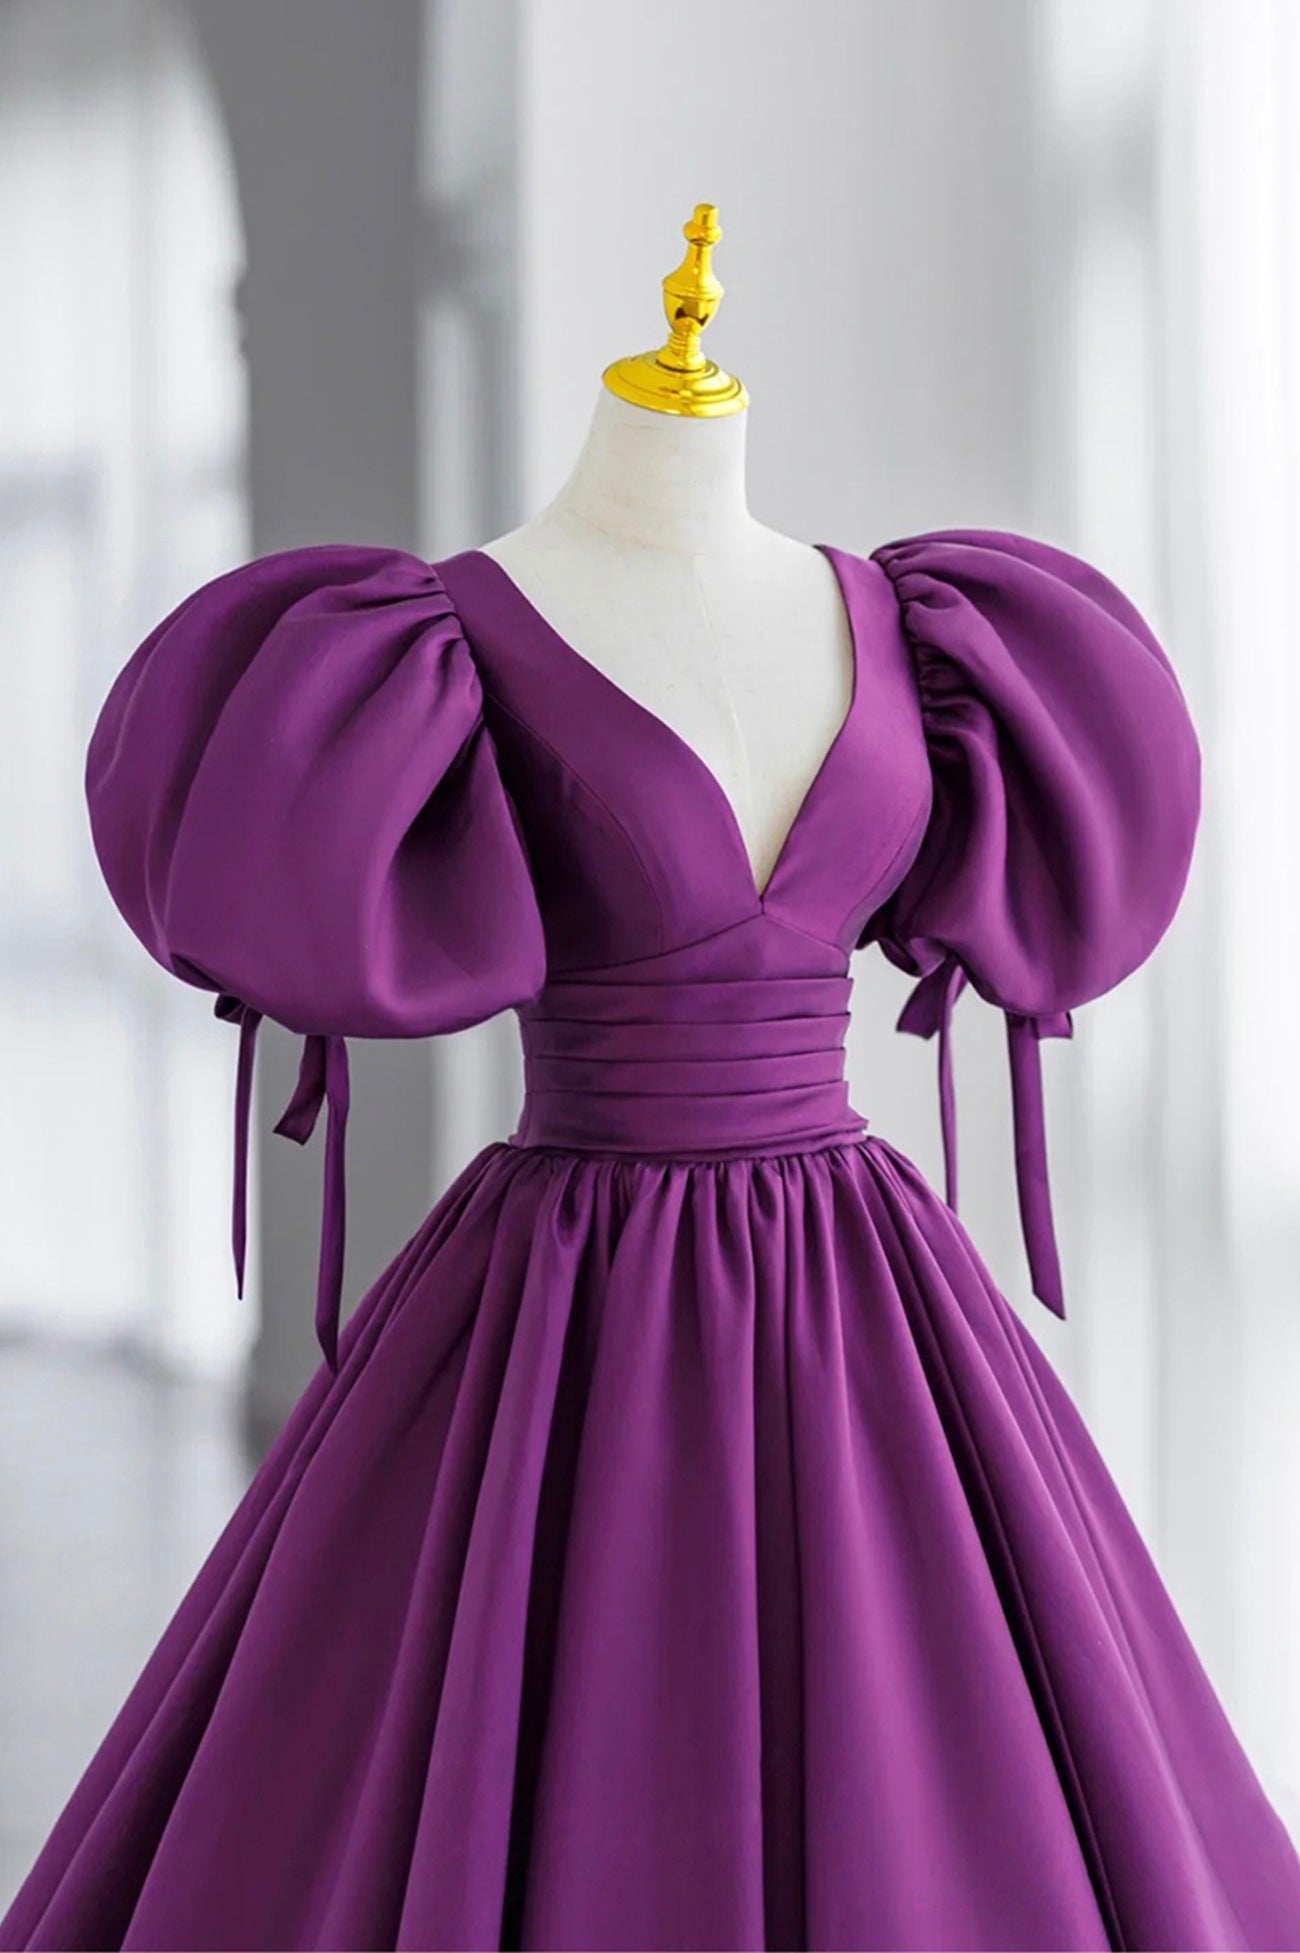 Purple V-Neck Satin Long Prom Dresses